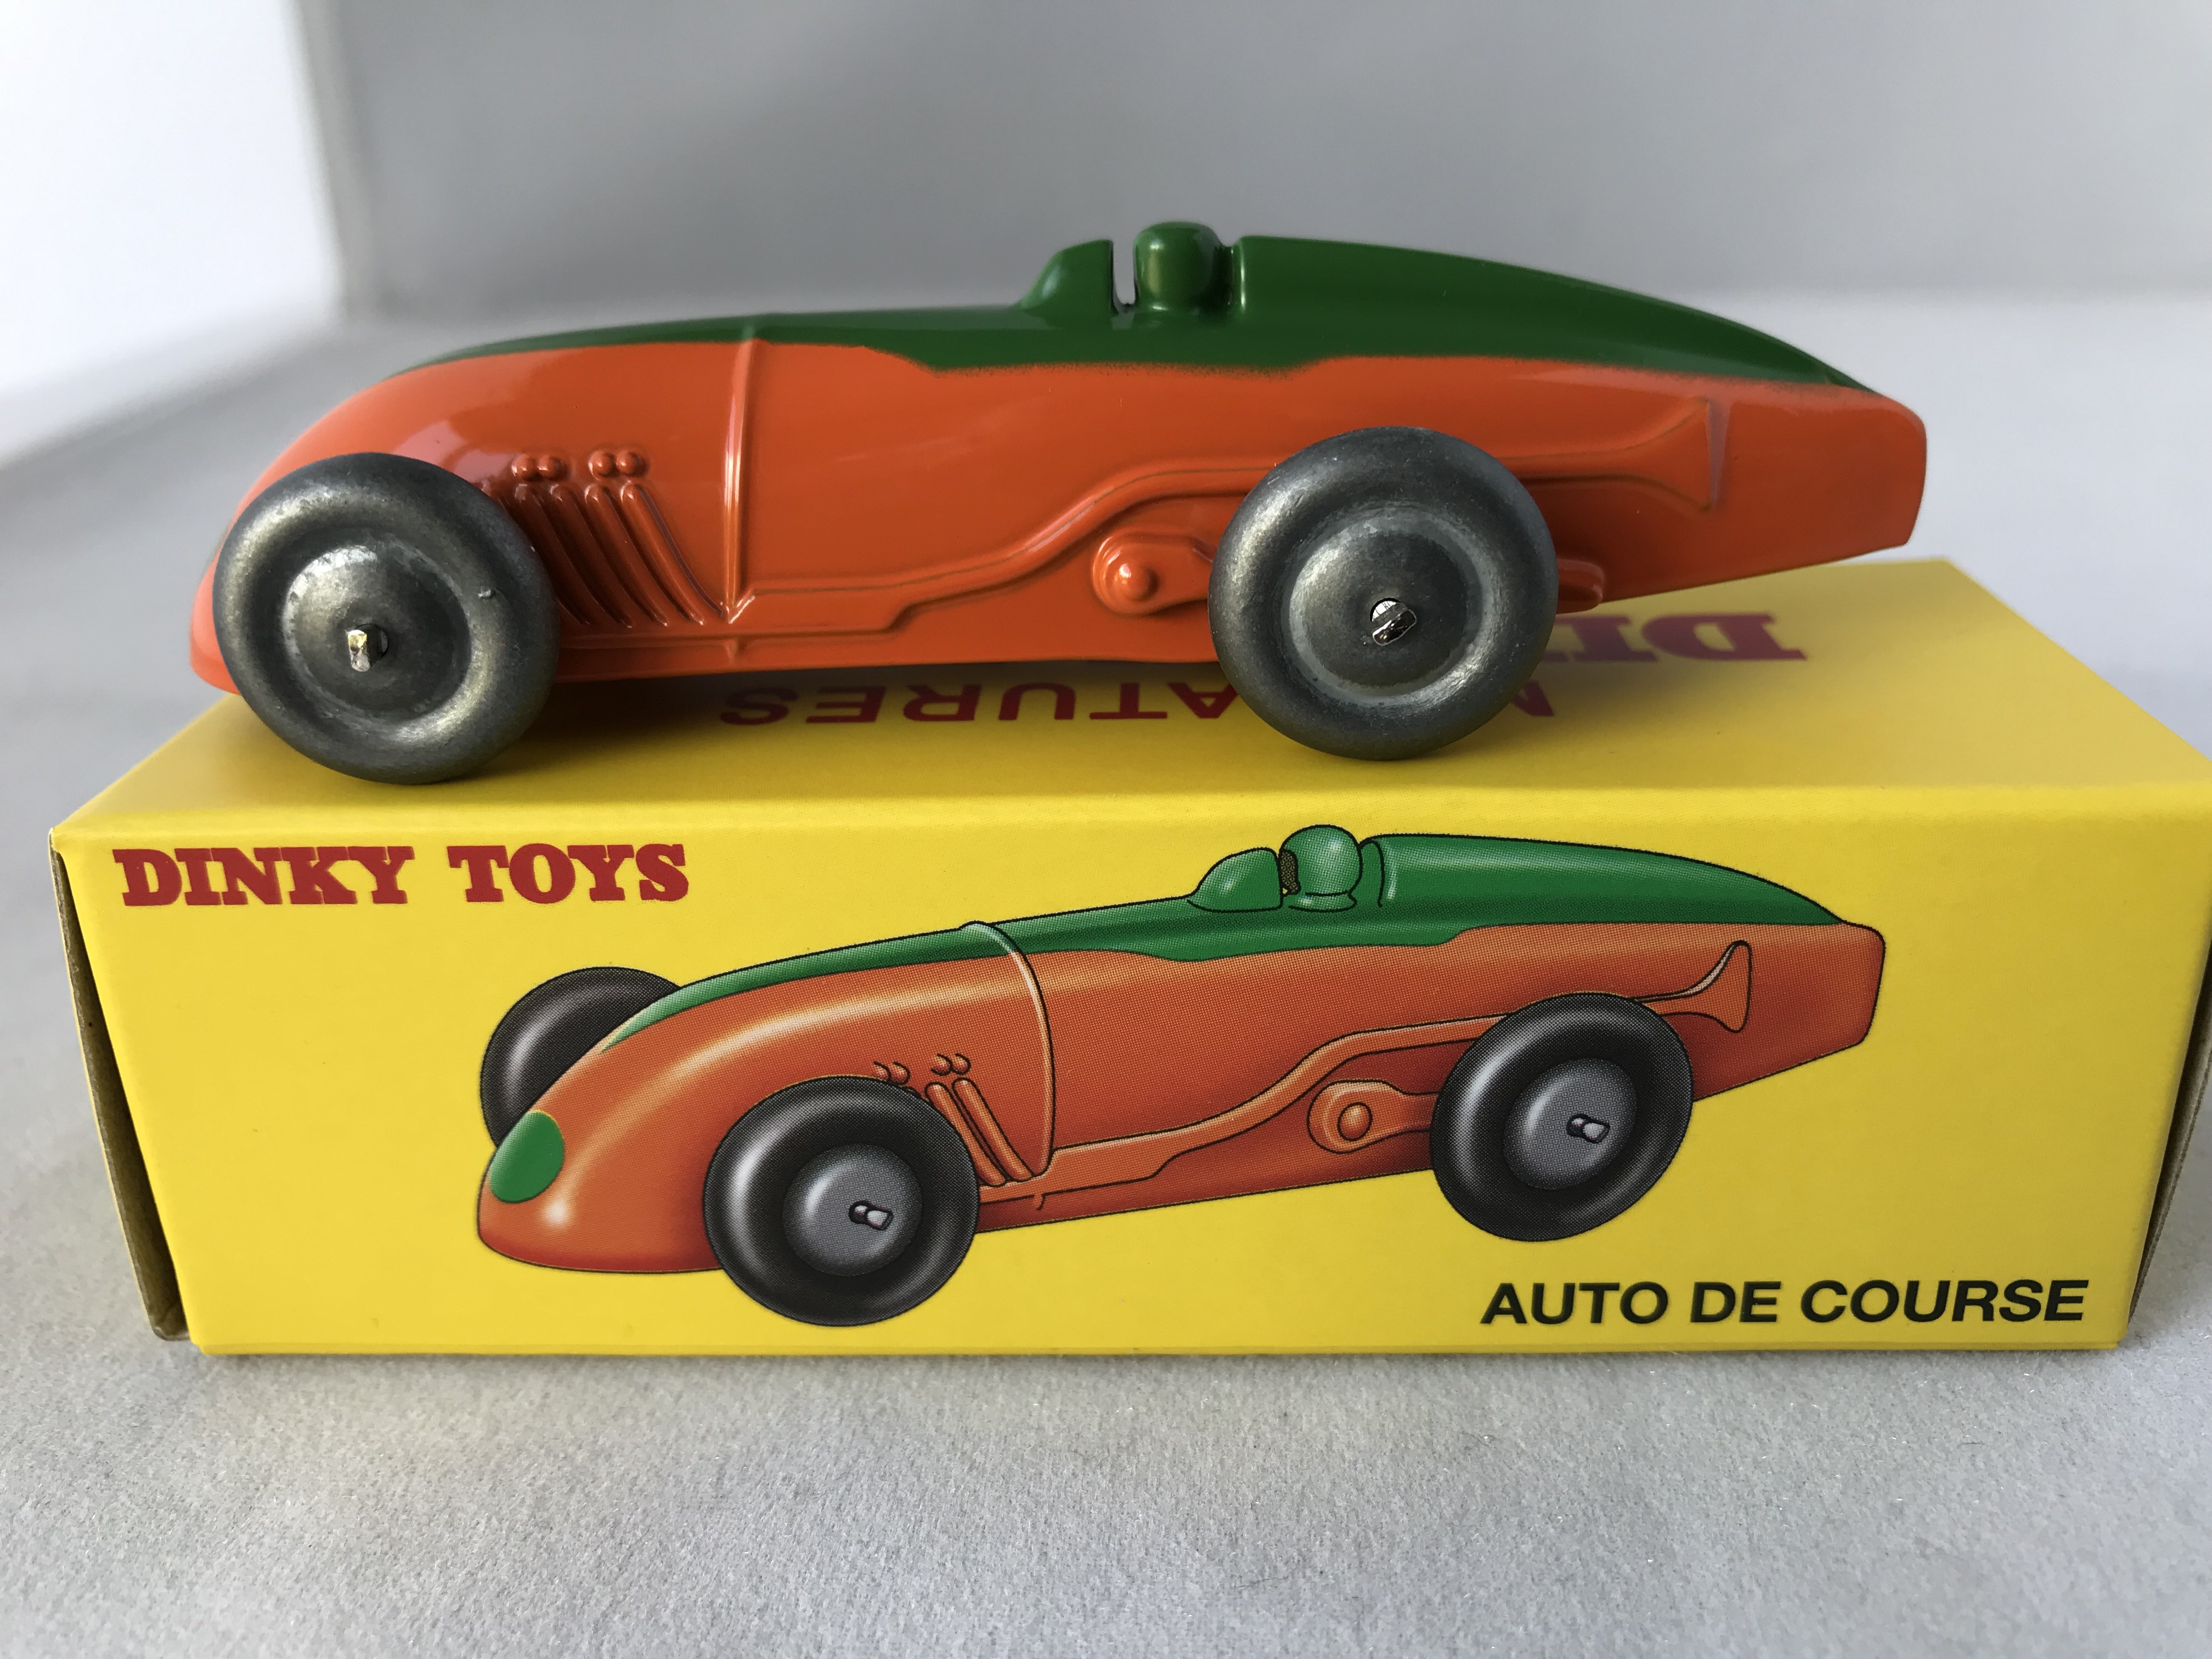 Dinky Toys 514 tipo van Slumberland coche Atlas Editions Diecast modelos Menta/Caja 